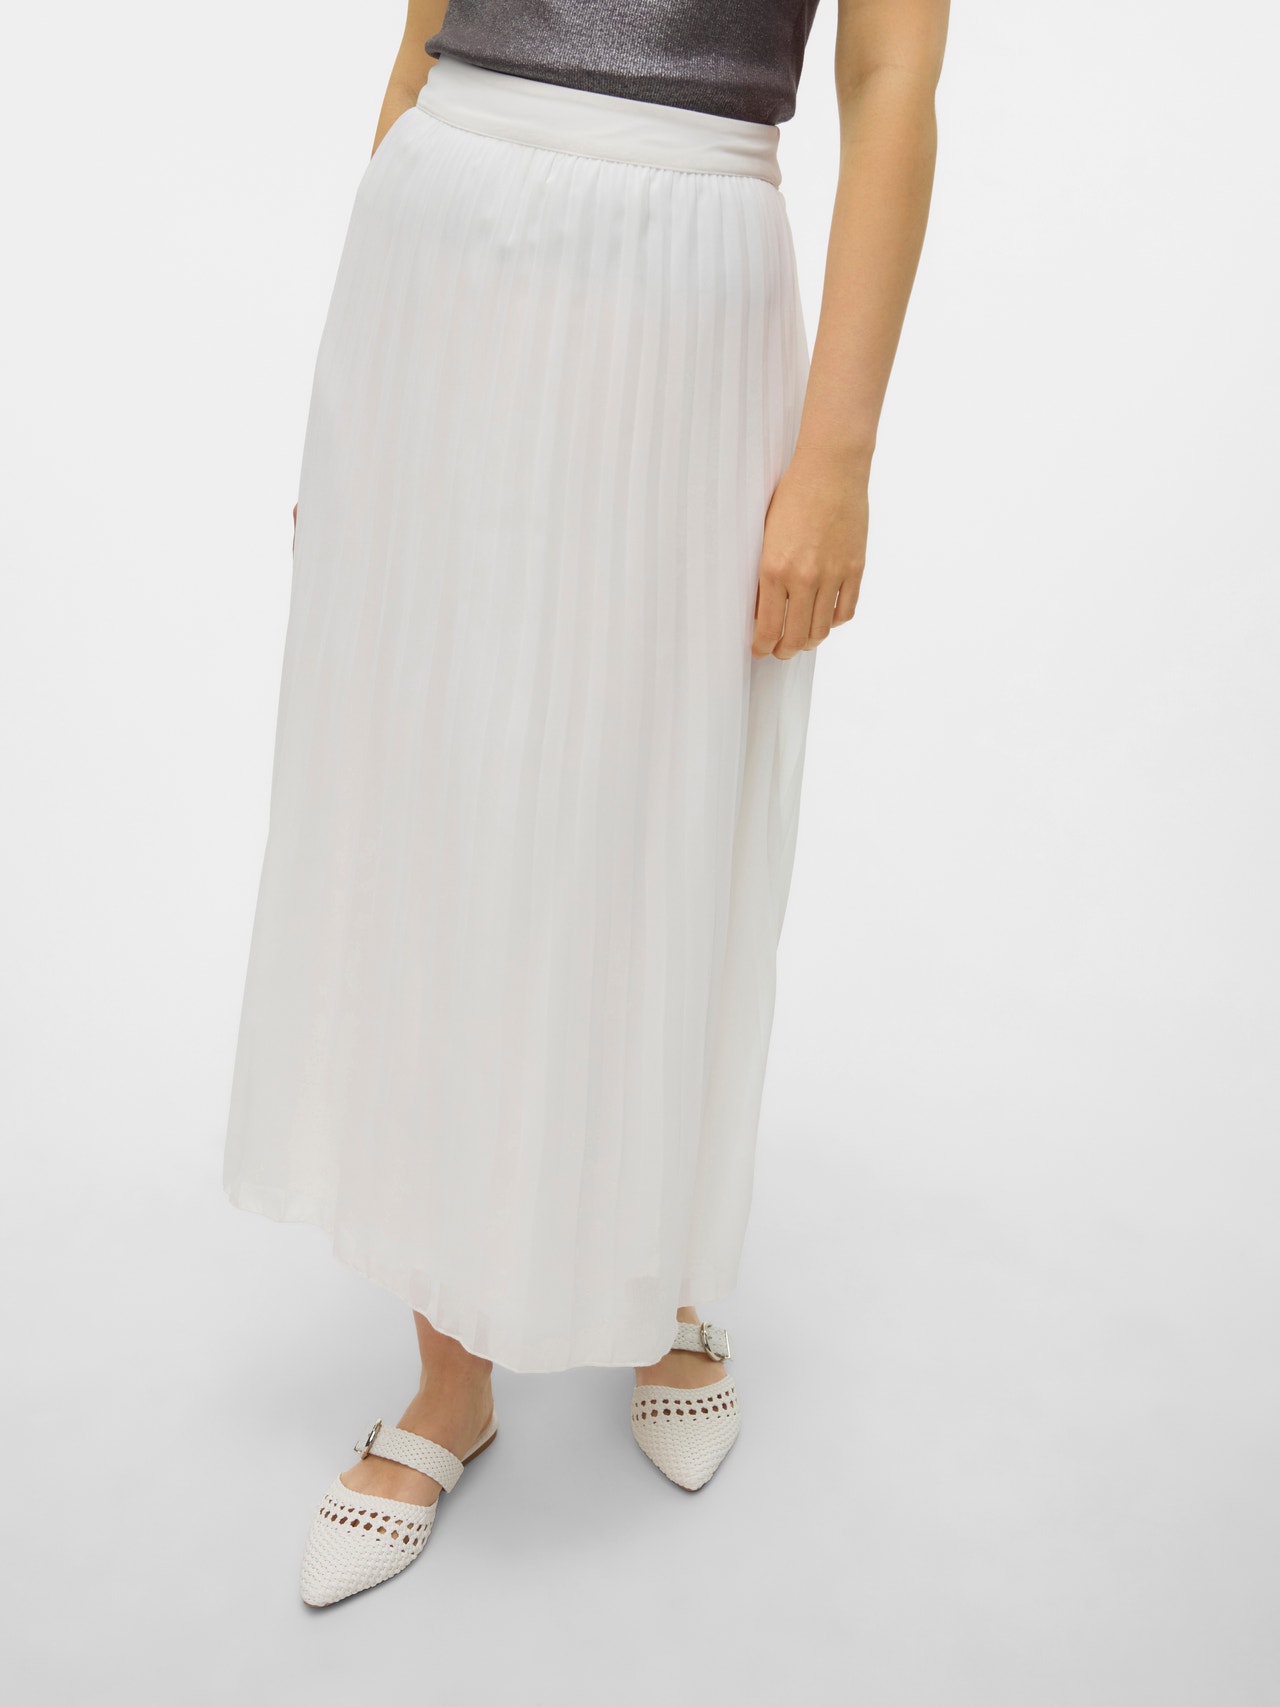 Vero Moda VMELLINA Long Skirt -Snow White - 10311821